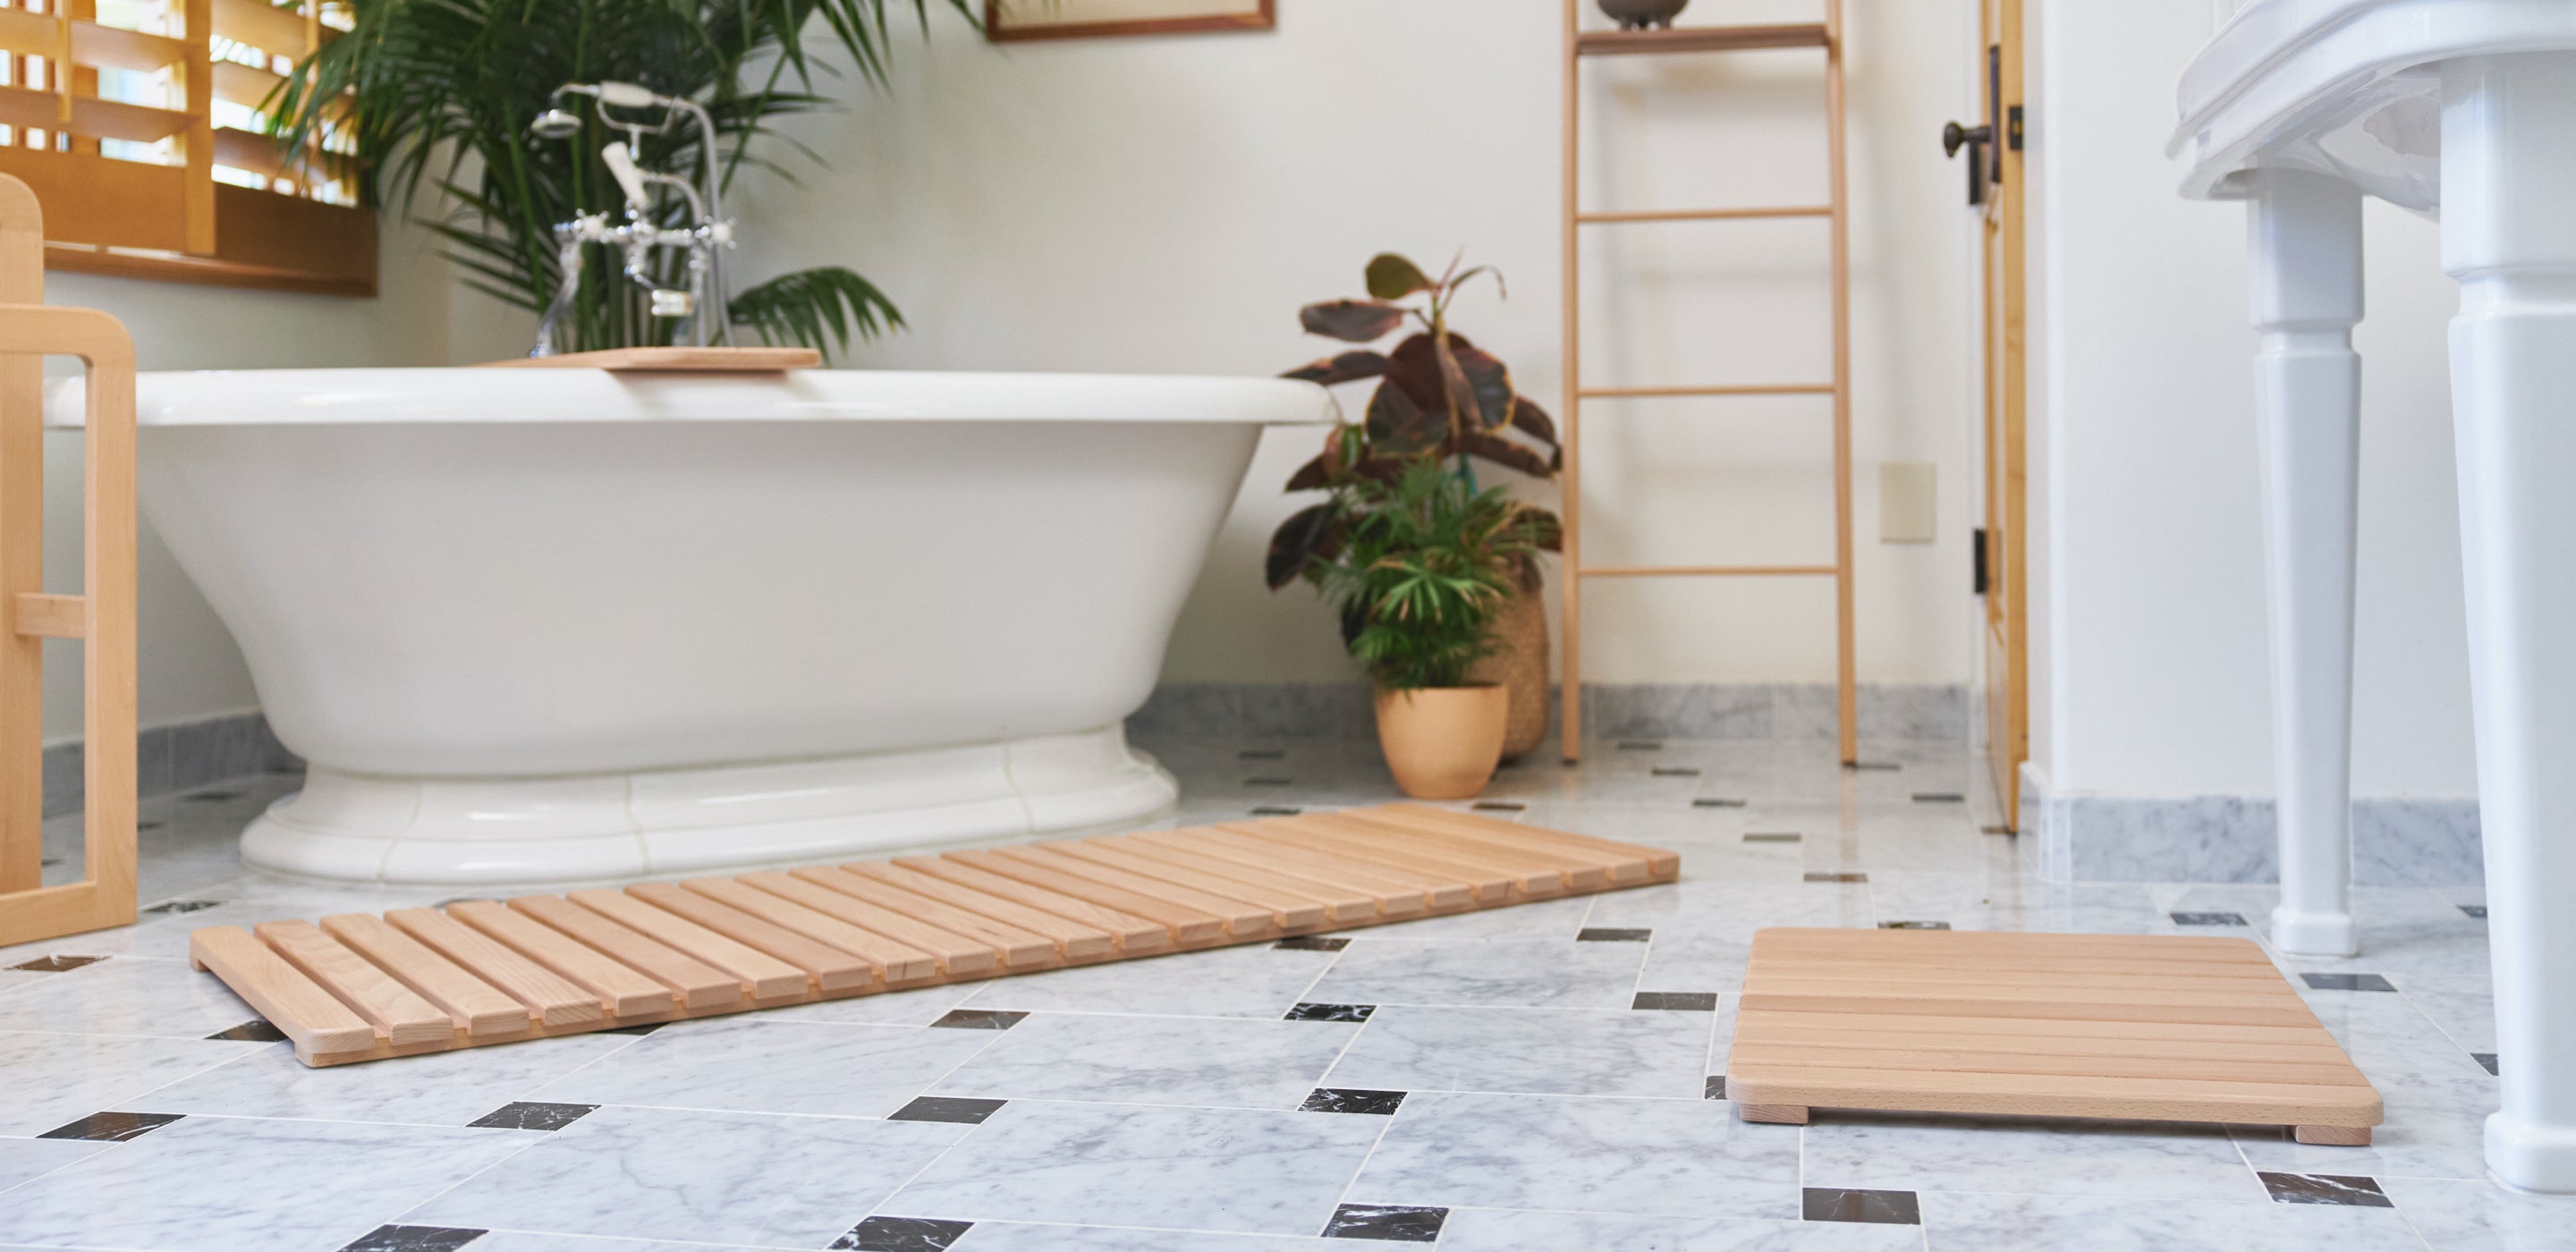 Wooden Bath Mats are Wood Shower Mats by American Floor Mats